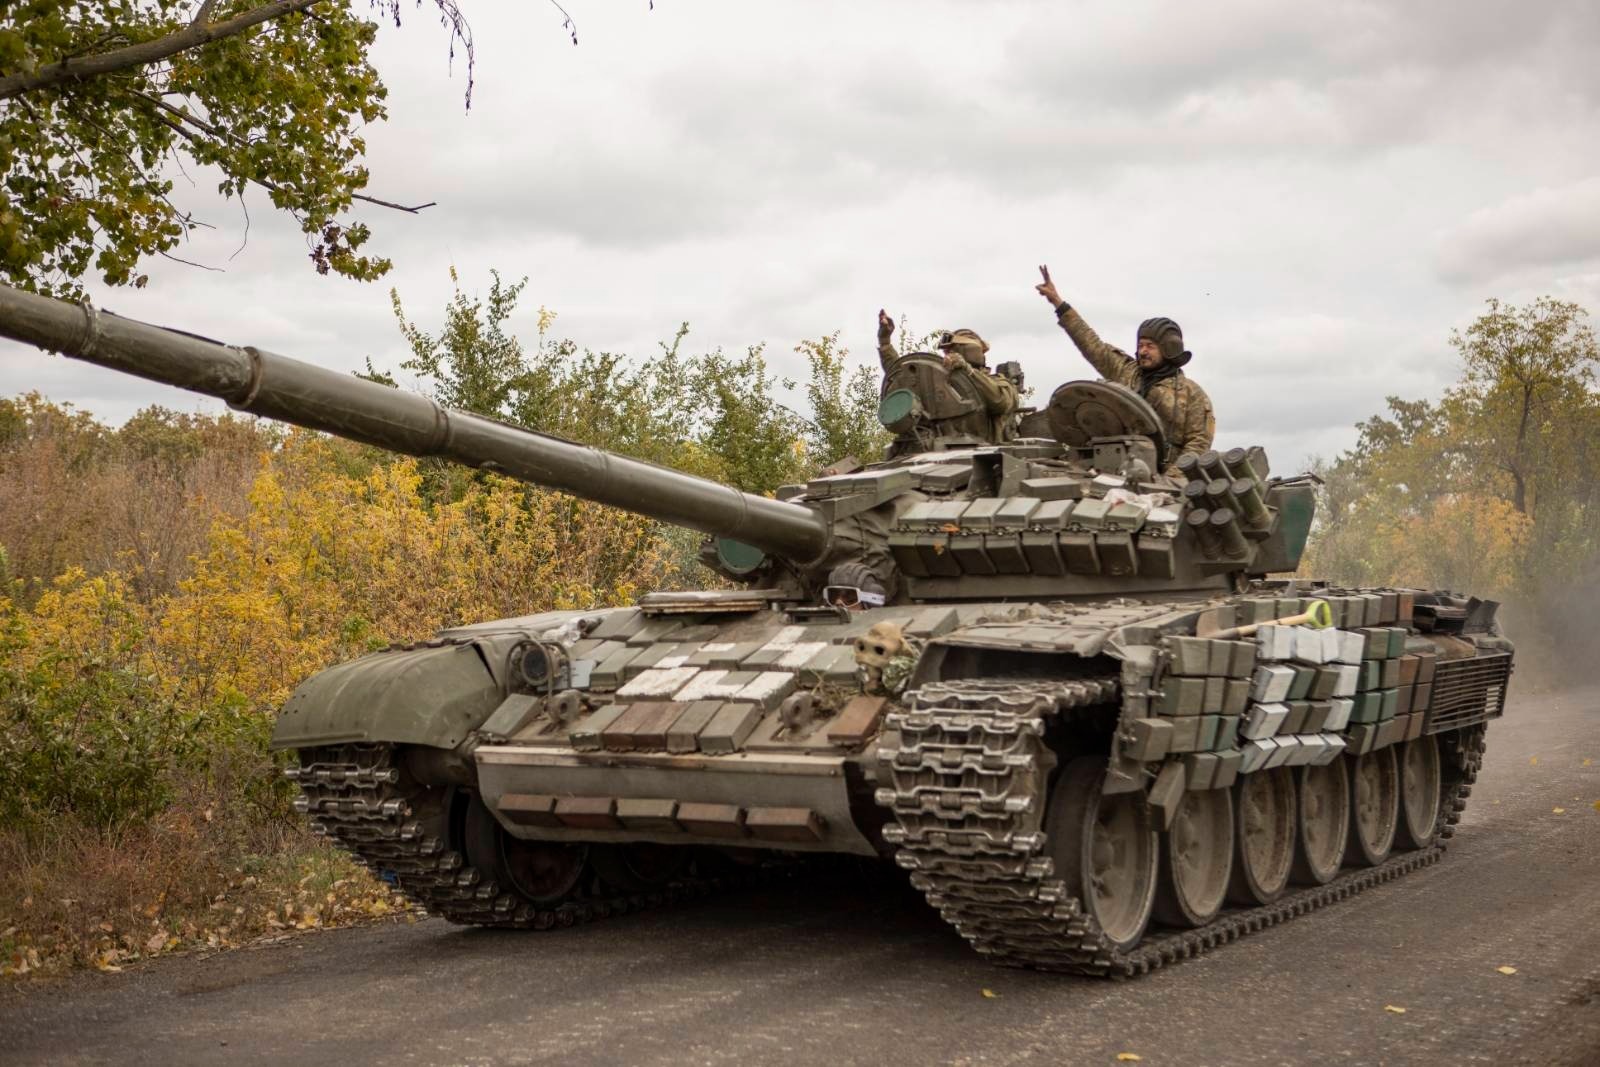 17 окрема танкова Криворізька бригада імені Костянтина Пестушка перетворила на залізяччя не одну таку ворожу бронемашину